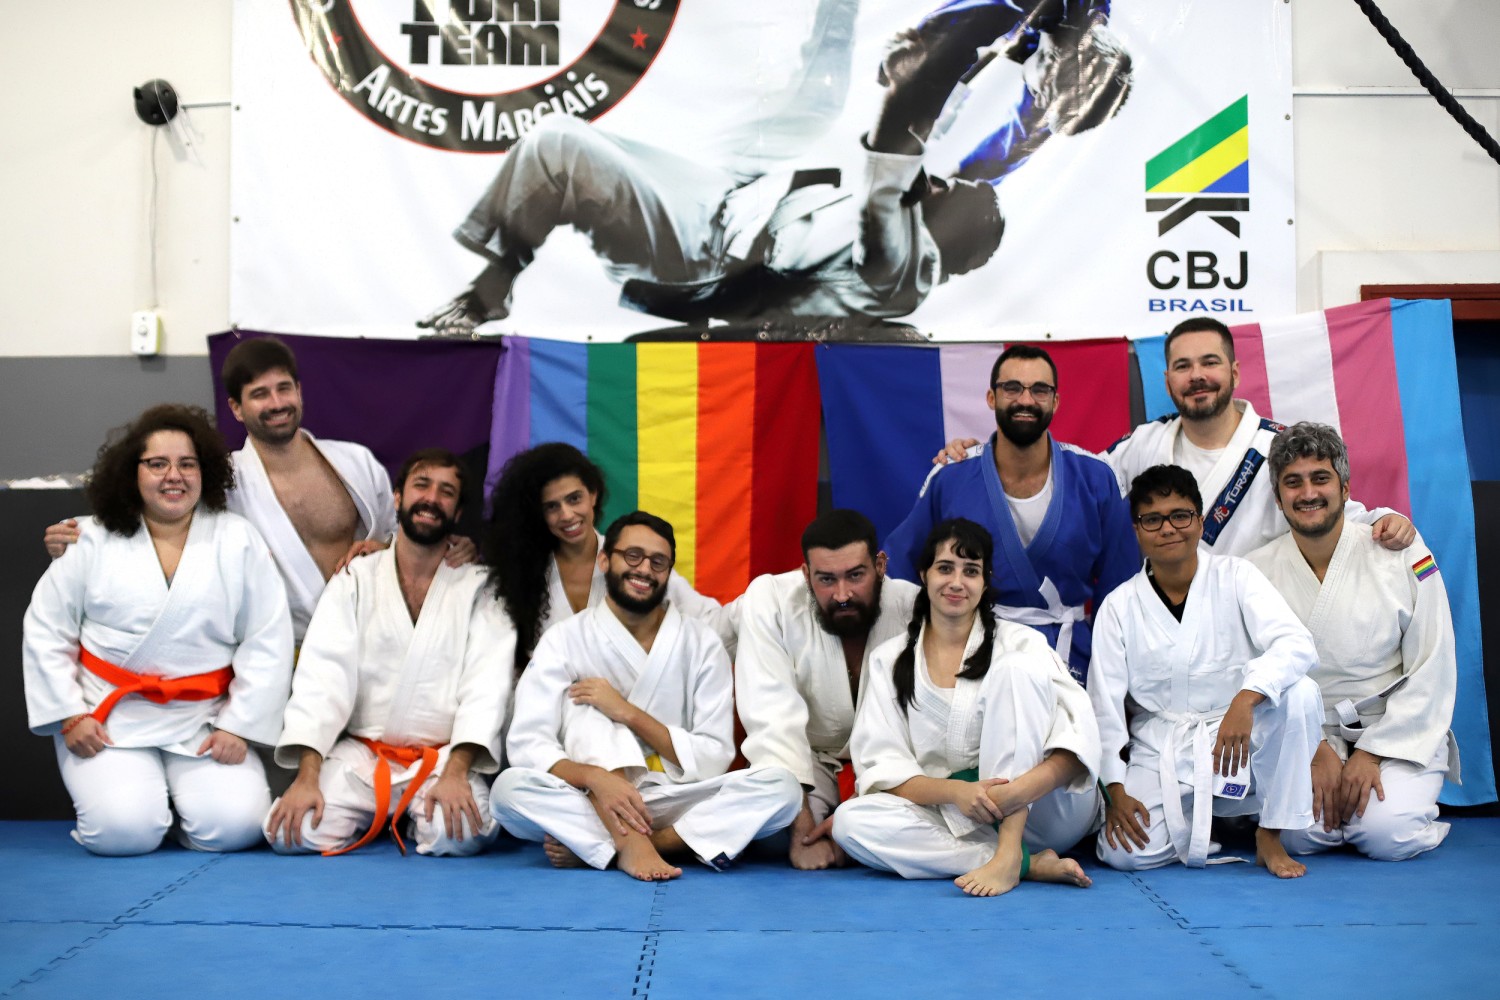 Judo/Jiu-jitsu - Pride Webshop